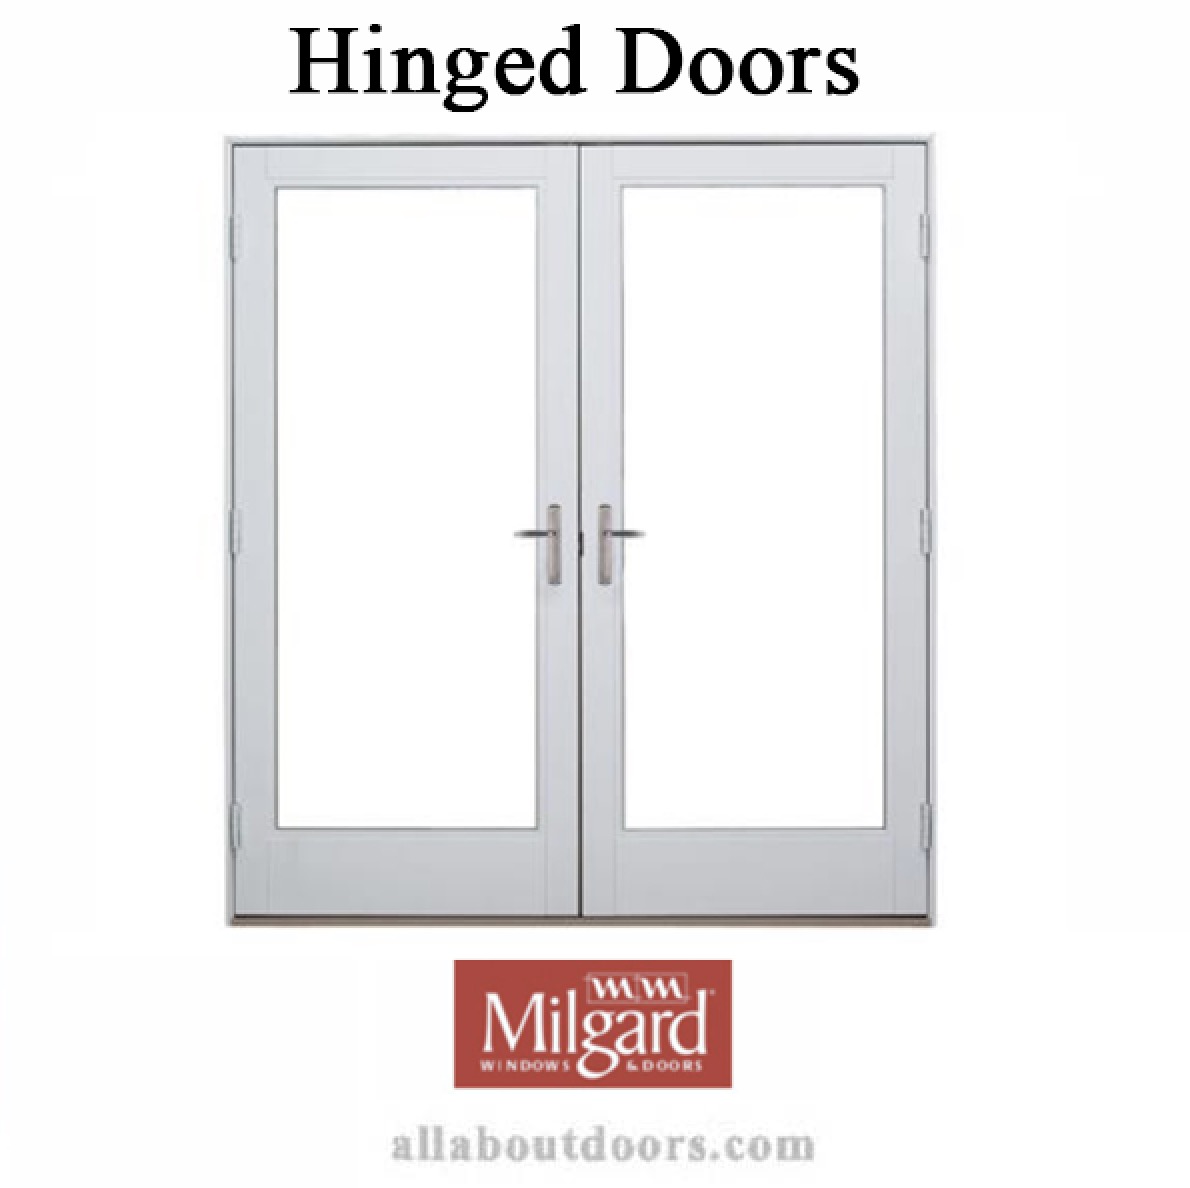 Milgard Hinged Door Hardware